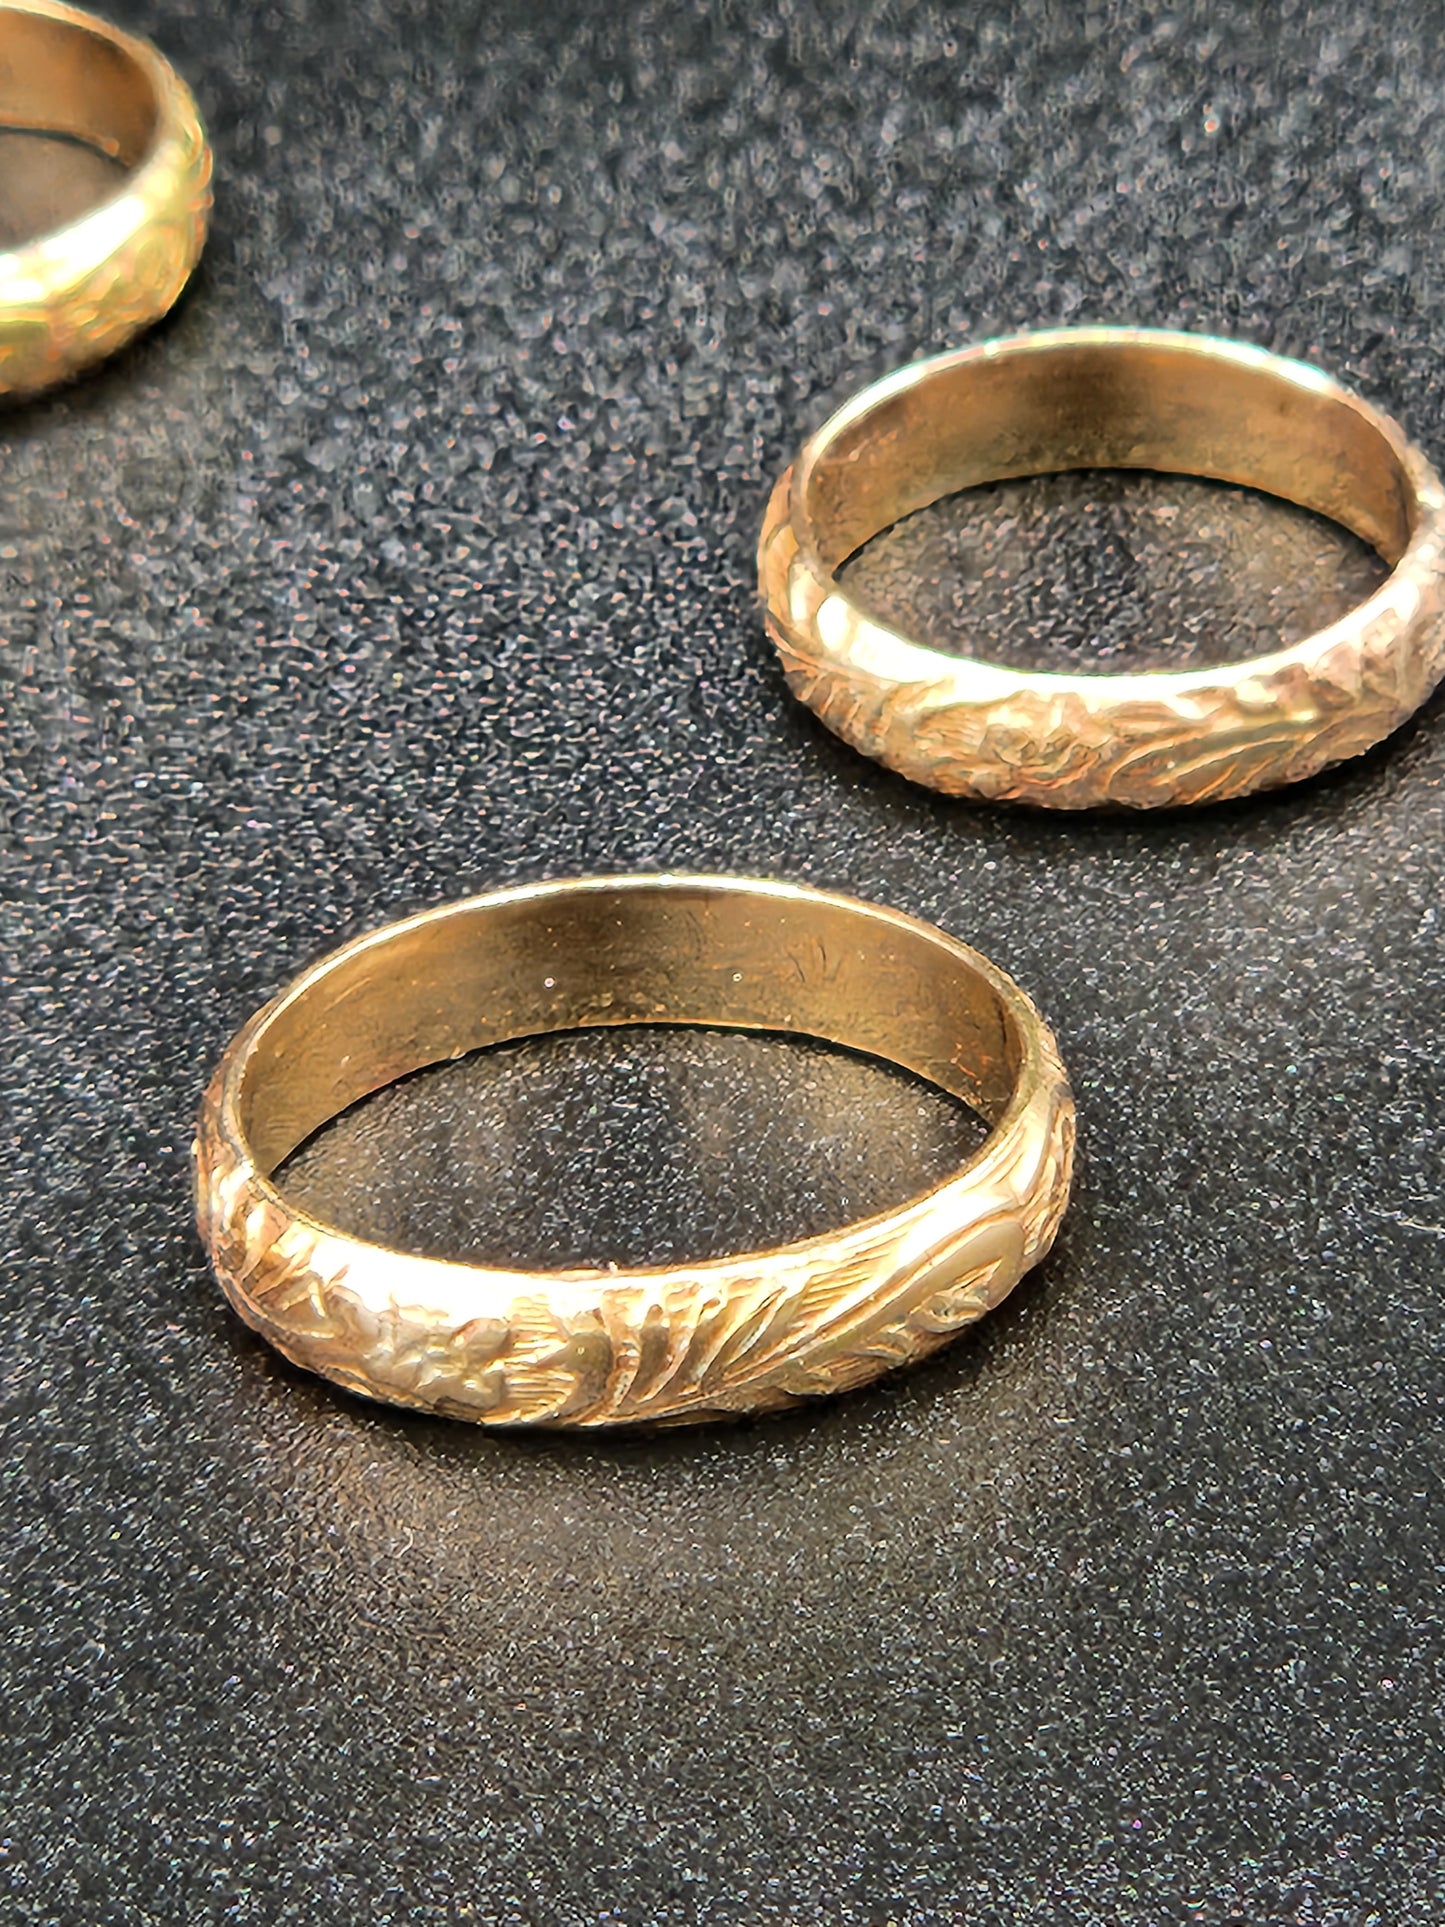 14k gold filled floral band ring